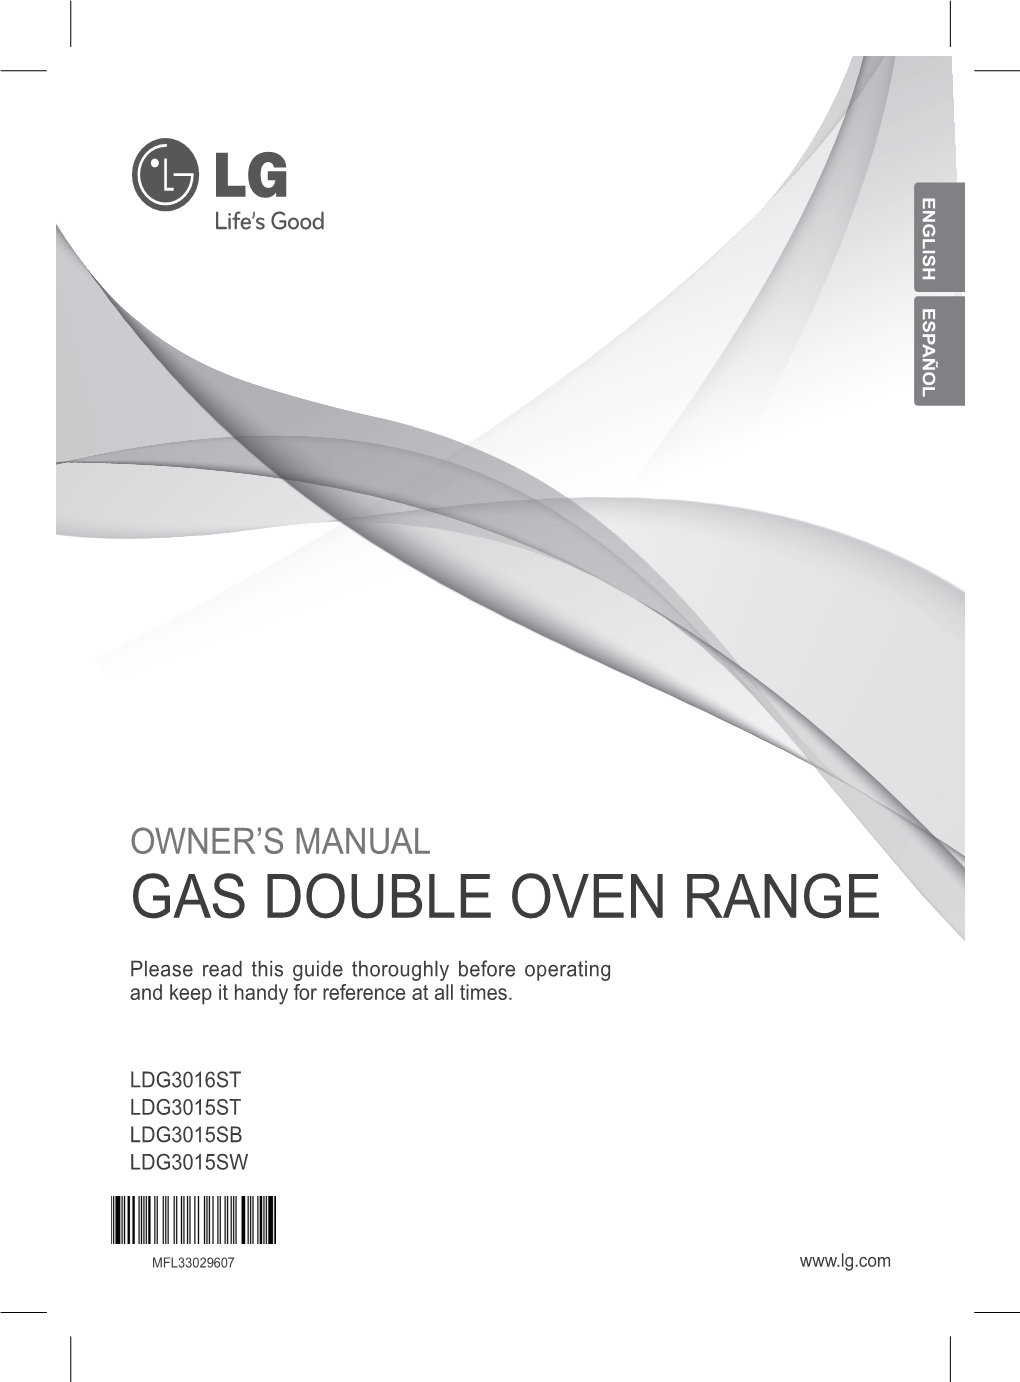 Gas Double Oven Range